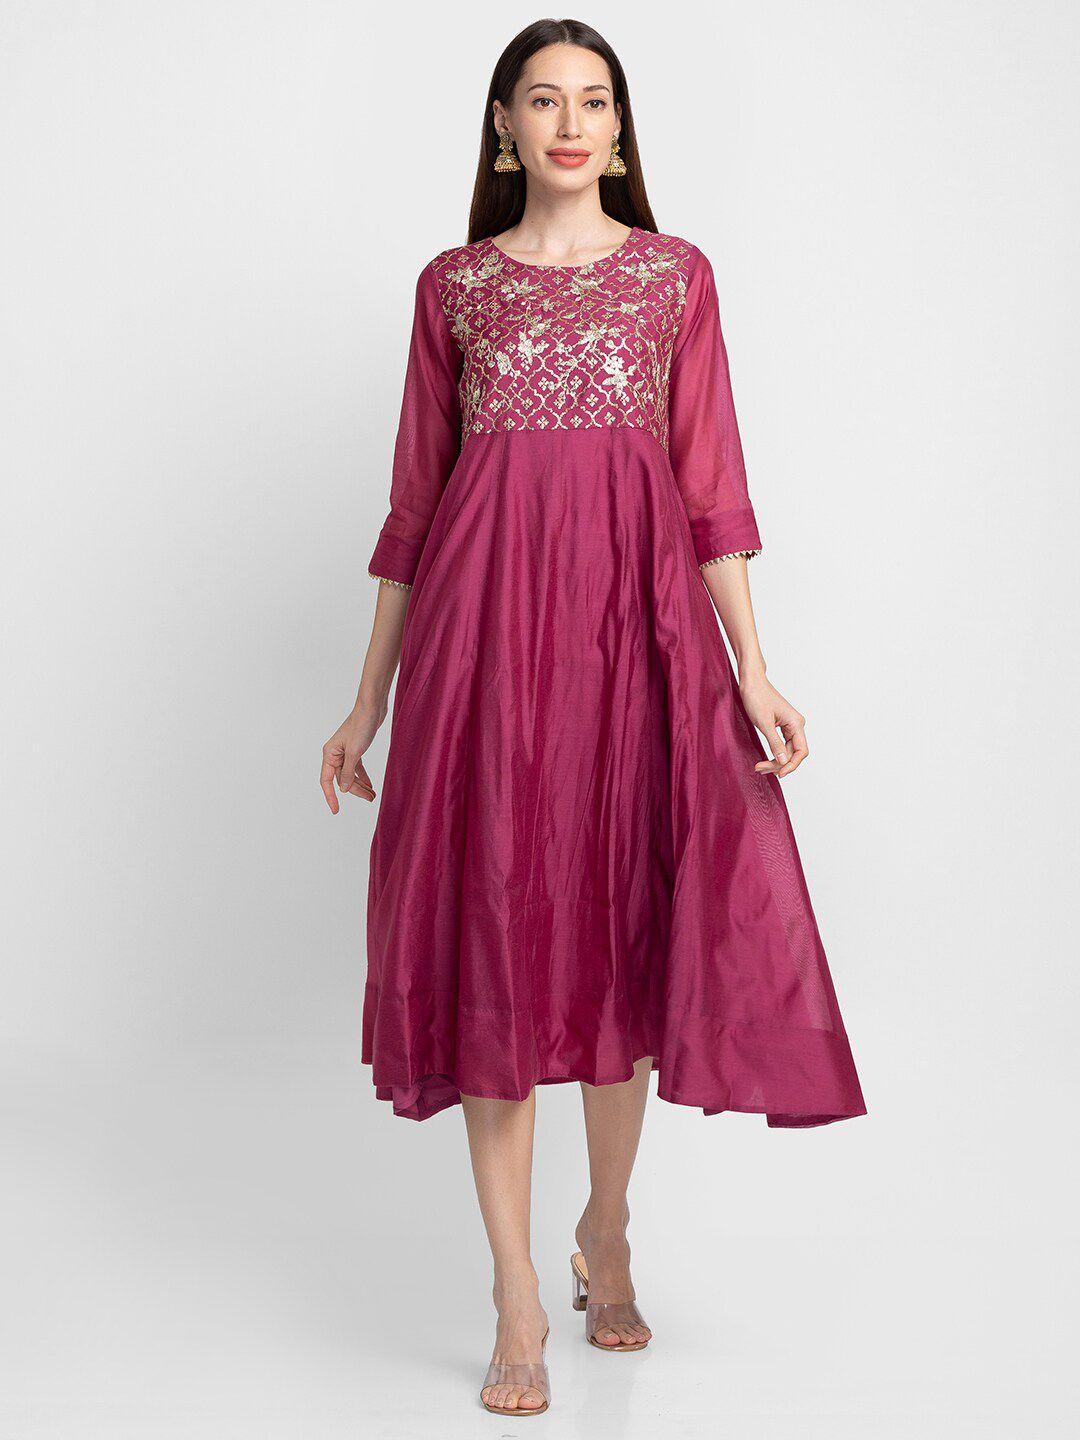 globus burgundy embellished ethnic midi dress